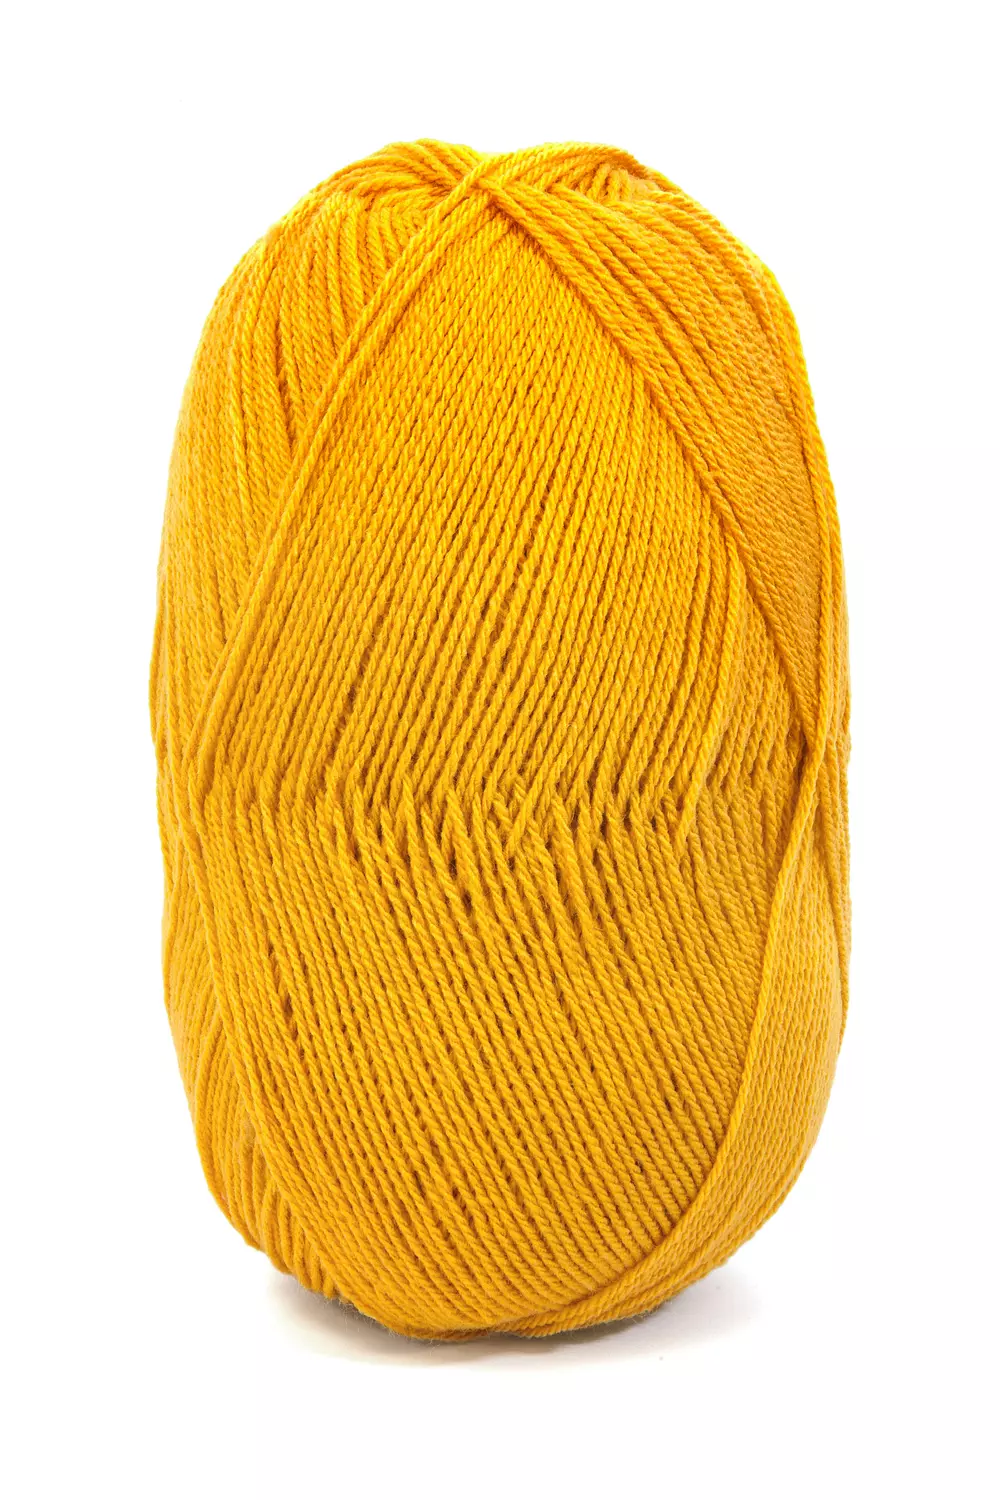 Ovillo lana amarillo. - Confecciones Ibañez